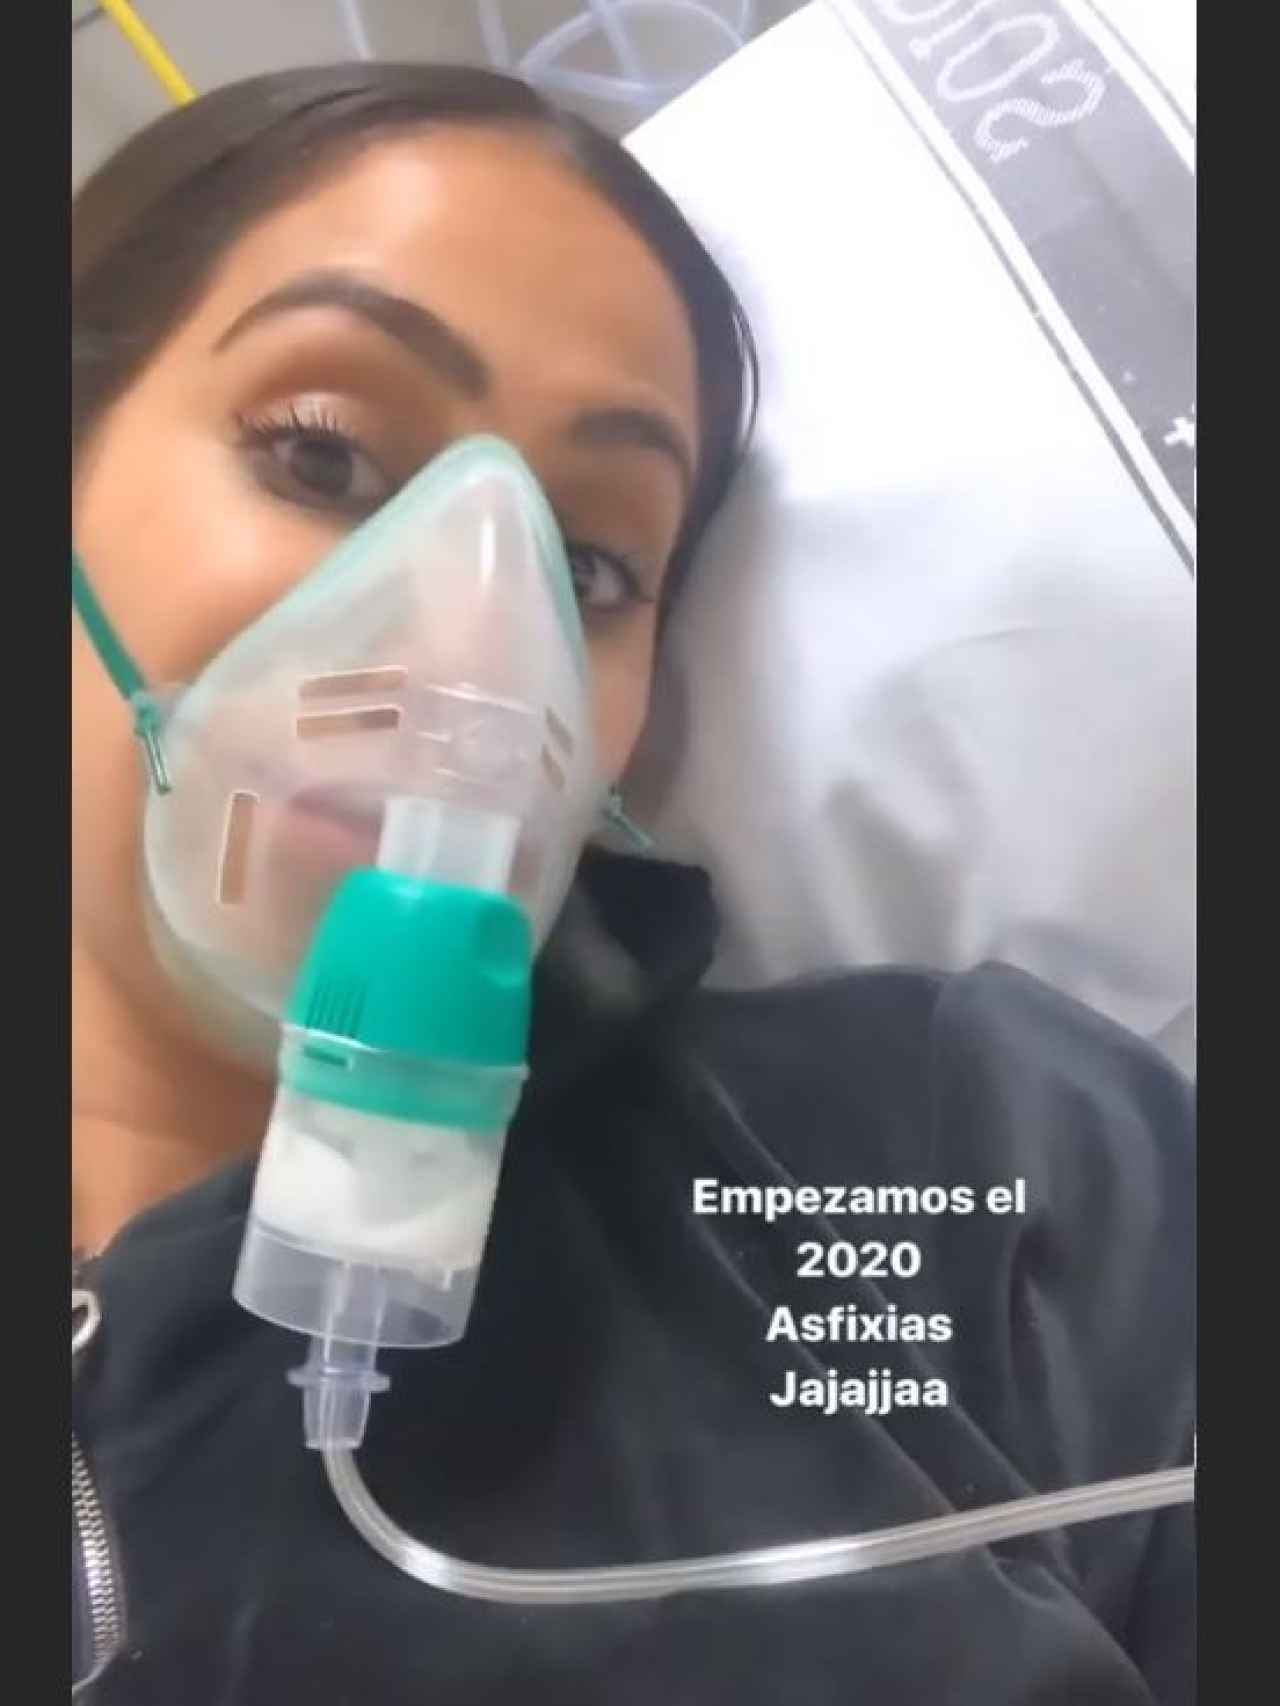 Pantallazo del 'storie' que ha subido Noemi Salazar en el hospital.